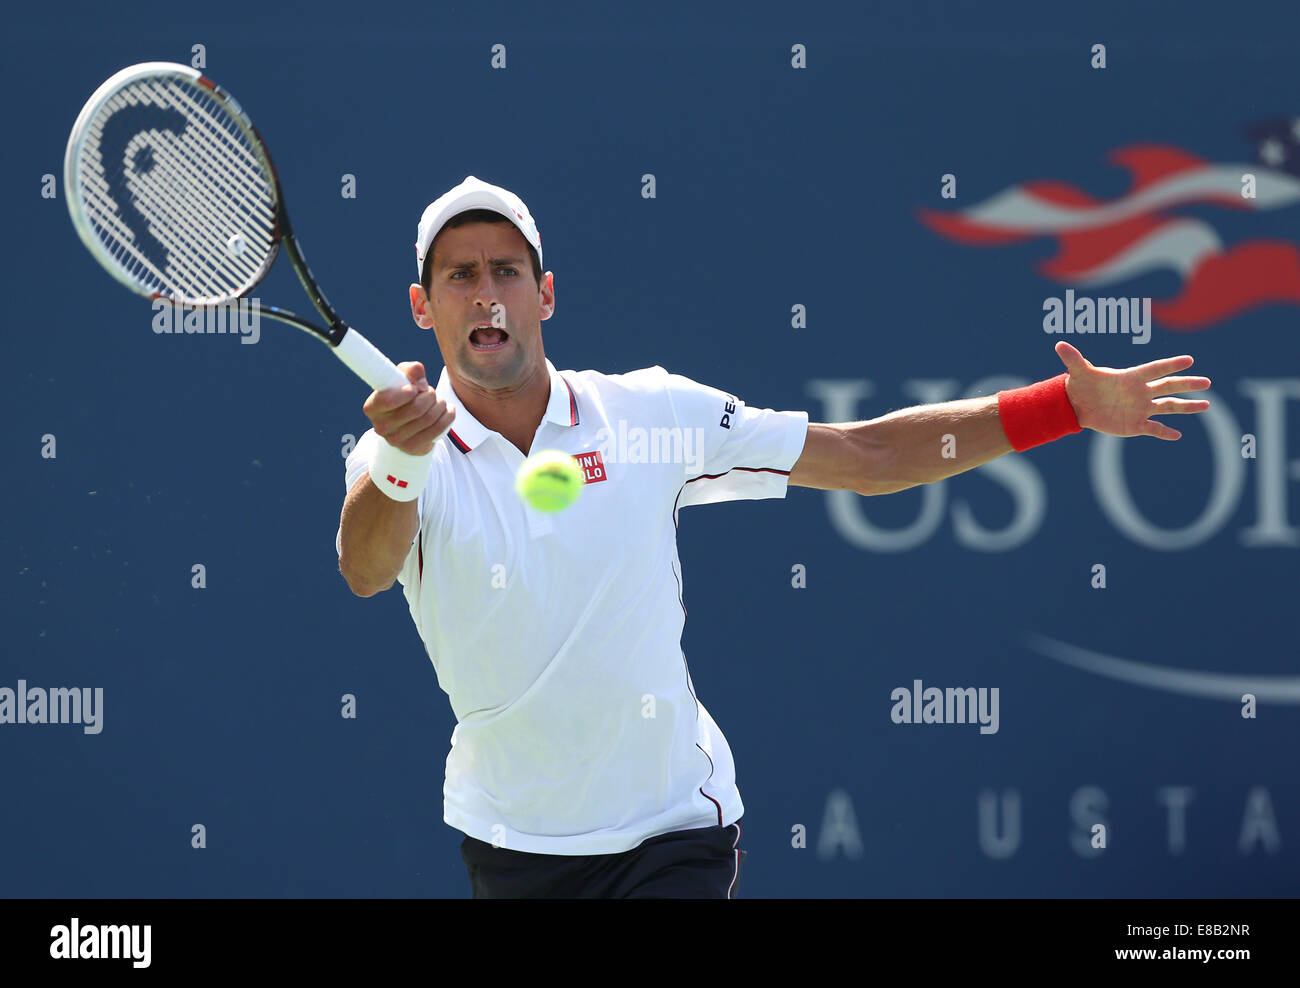 Novak Djokovic (SRB) en action à l'US Open 2014 à New York,USA. Banque D'Images